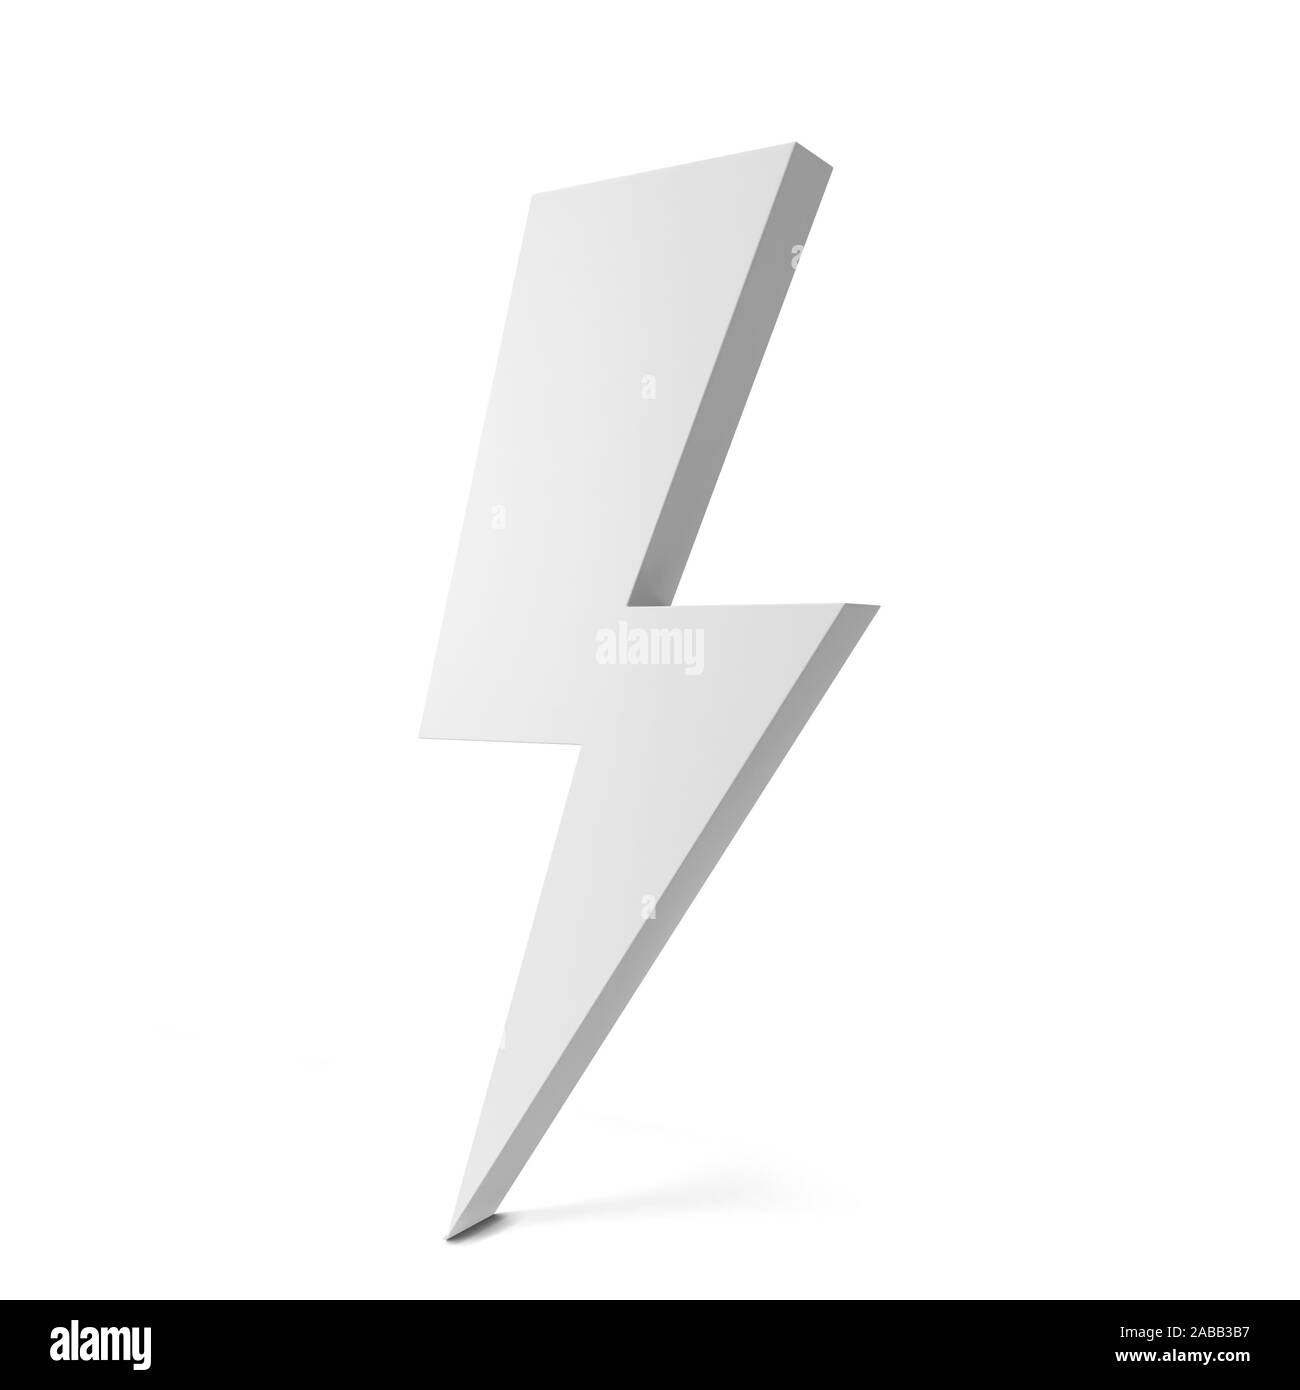 Lightning symbol. 3d illustration isolated on white background Stock Photo